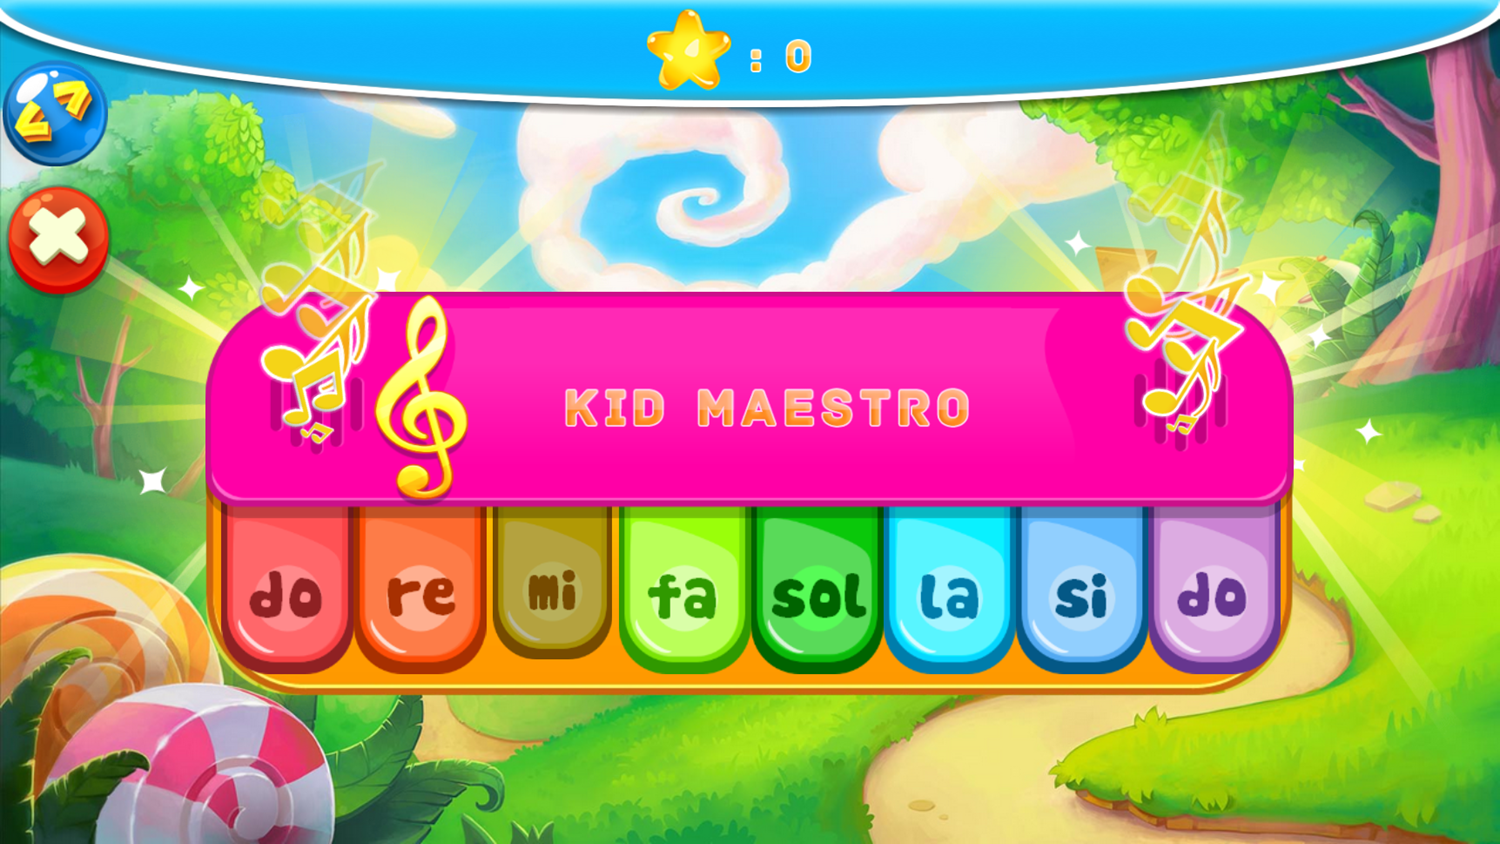 Kid Maestro Virtual Piano Free Play Screenshot.